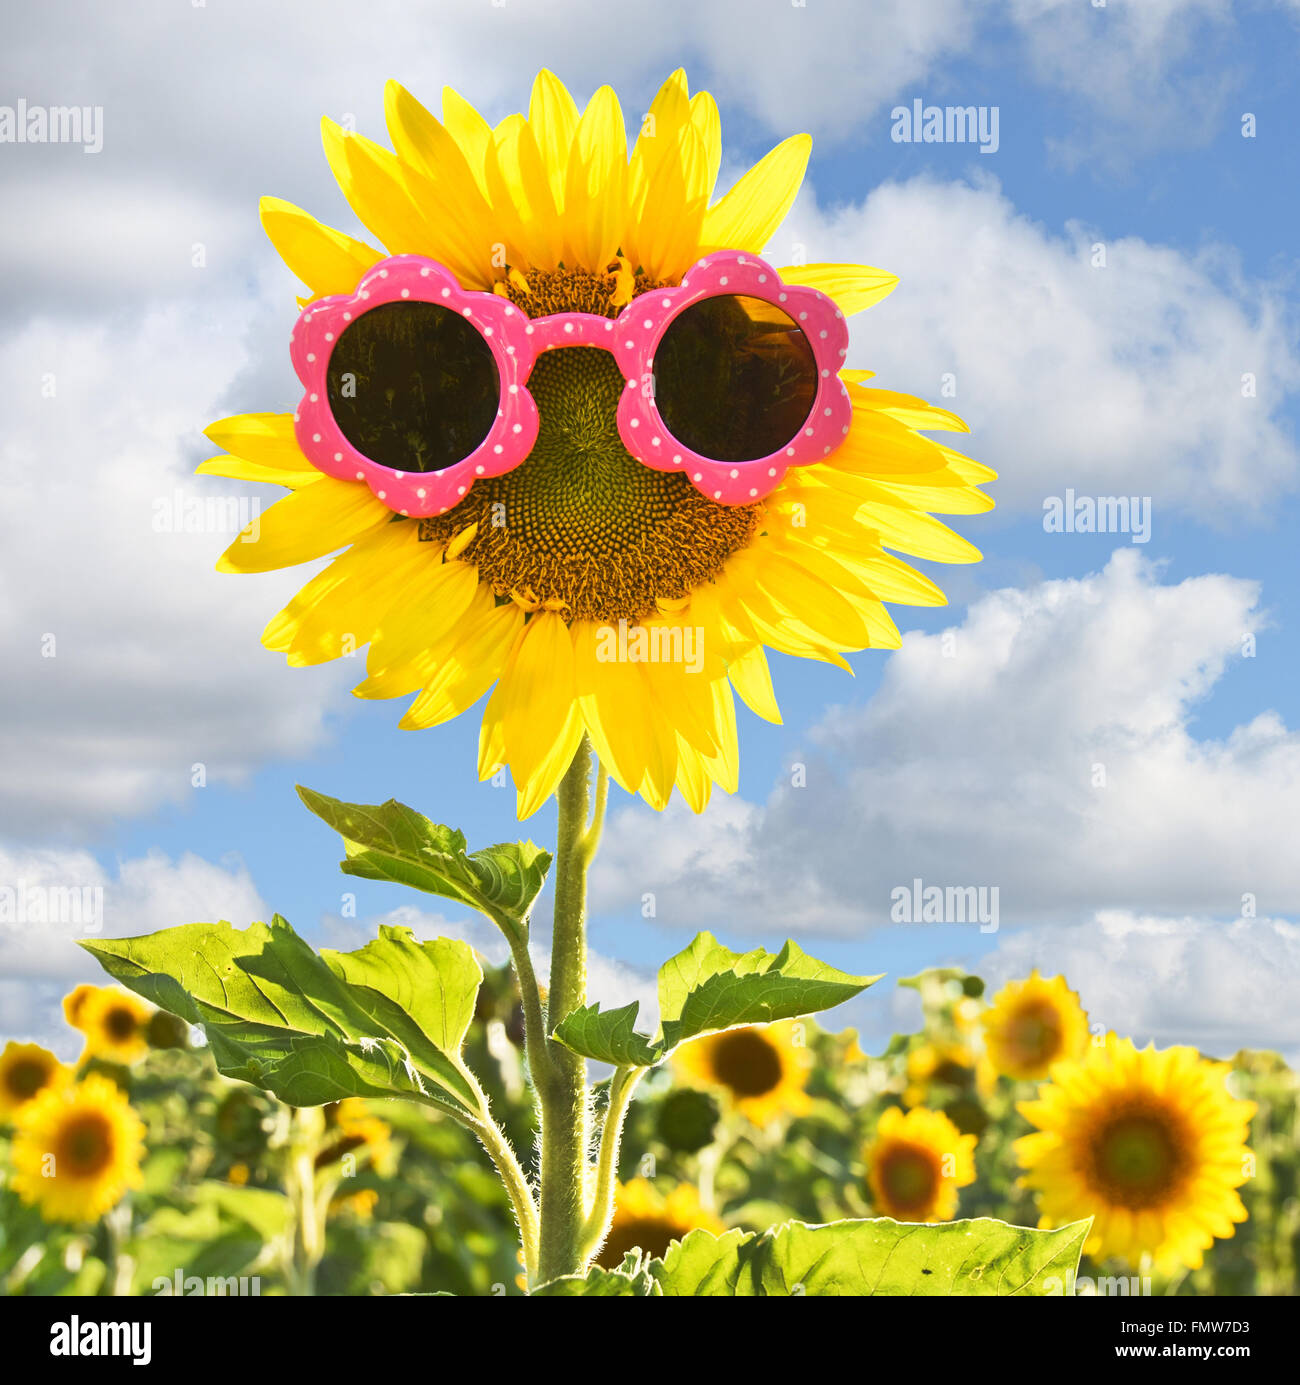 Yellow sunflower wearing pink sunglasses in sunflower field. Stock Photo